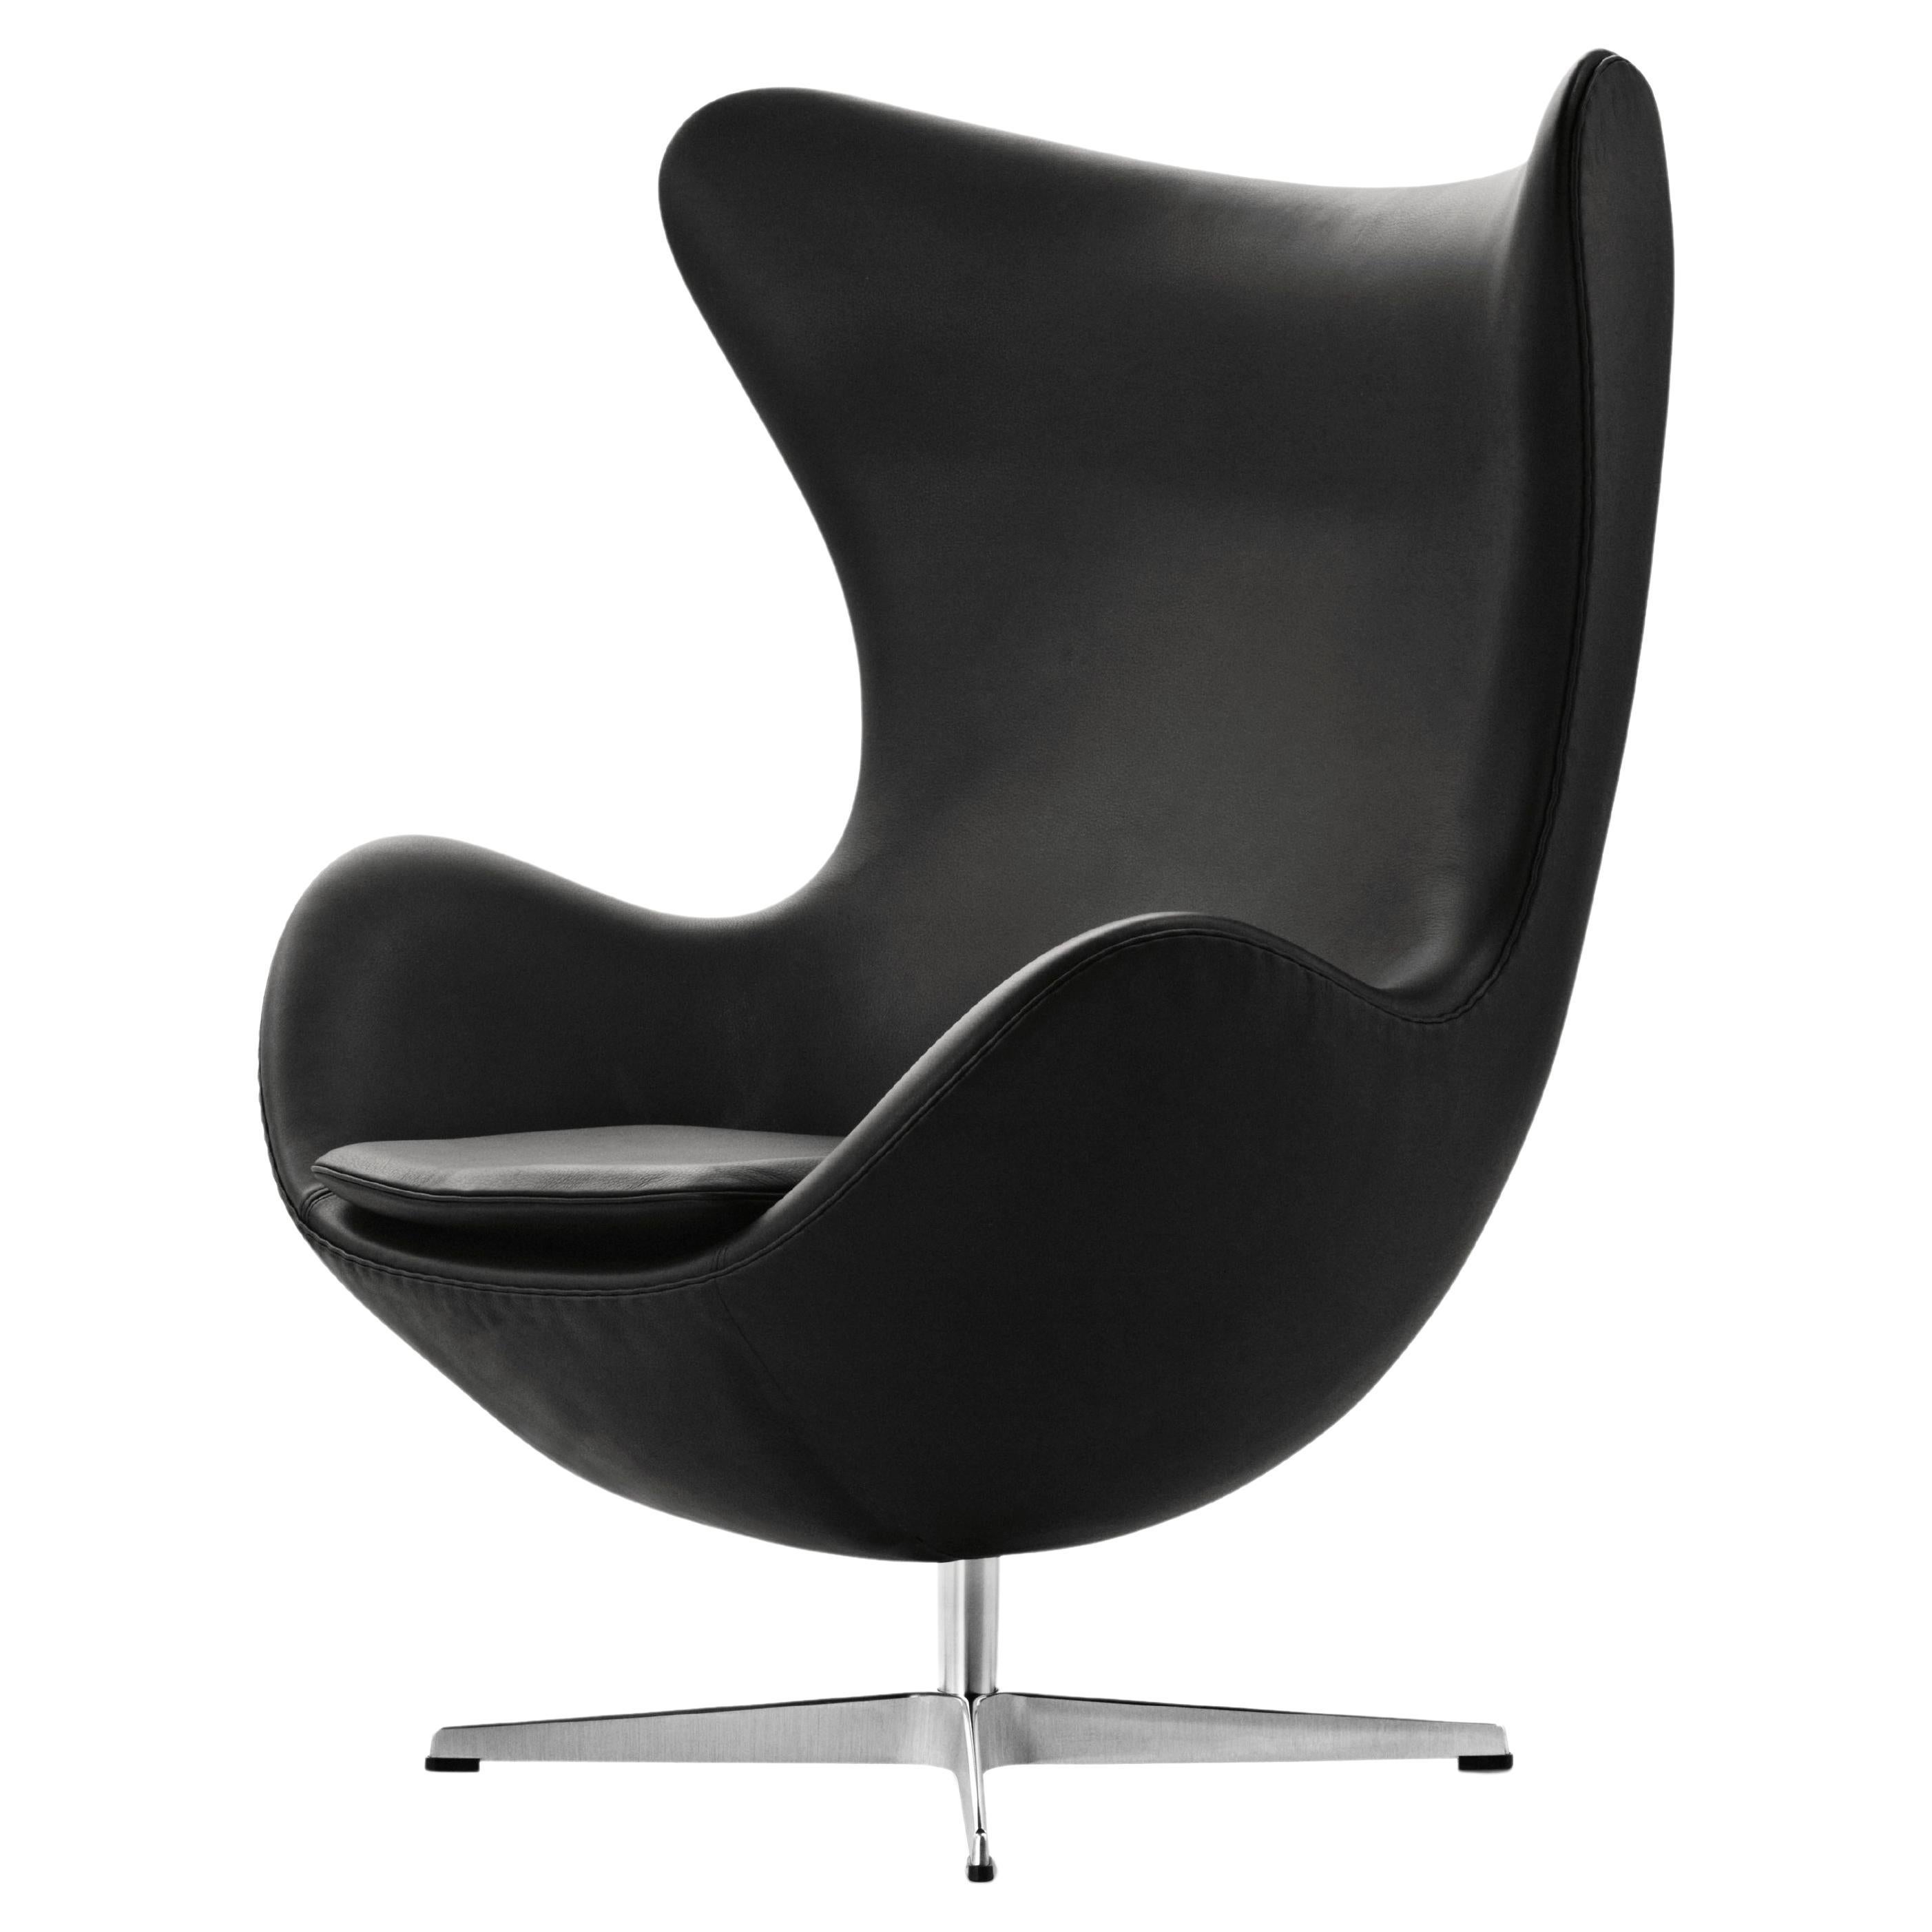 Arne Jacobsen 'Egg' Chair for Fritz Hansen in Leather Upholstery (Cat. 4)